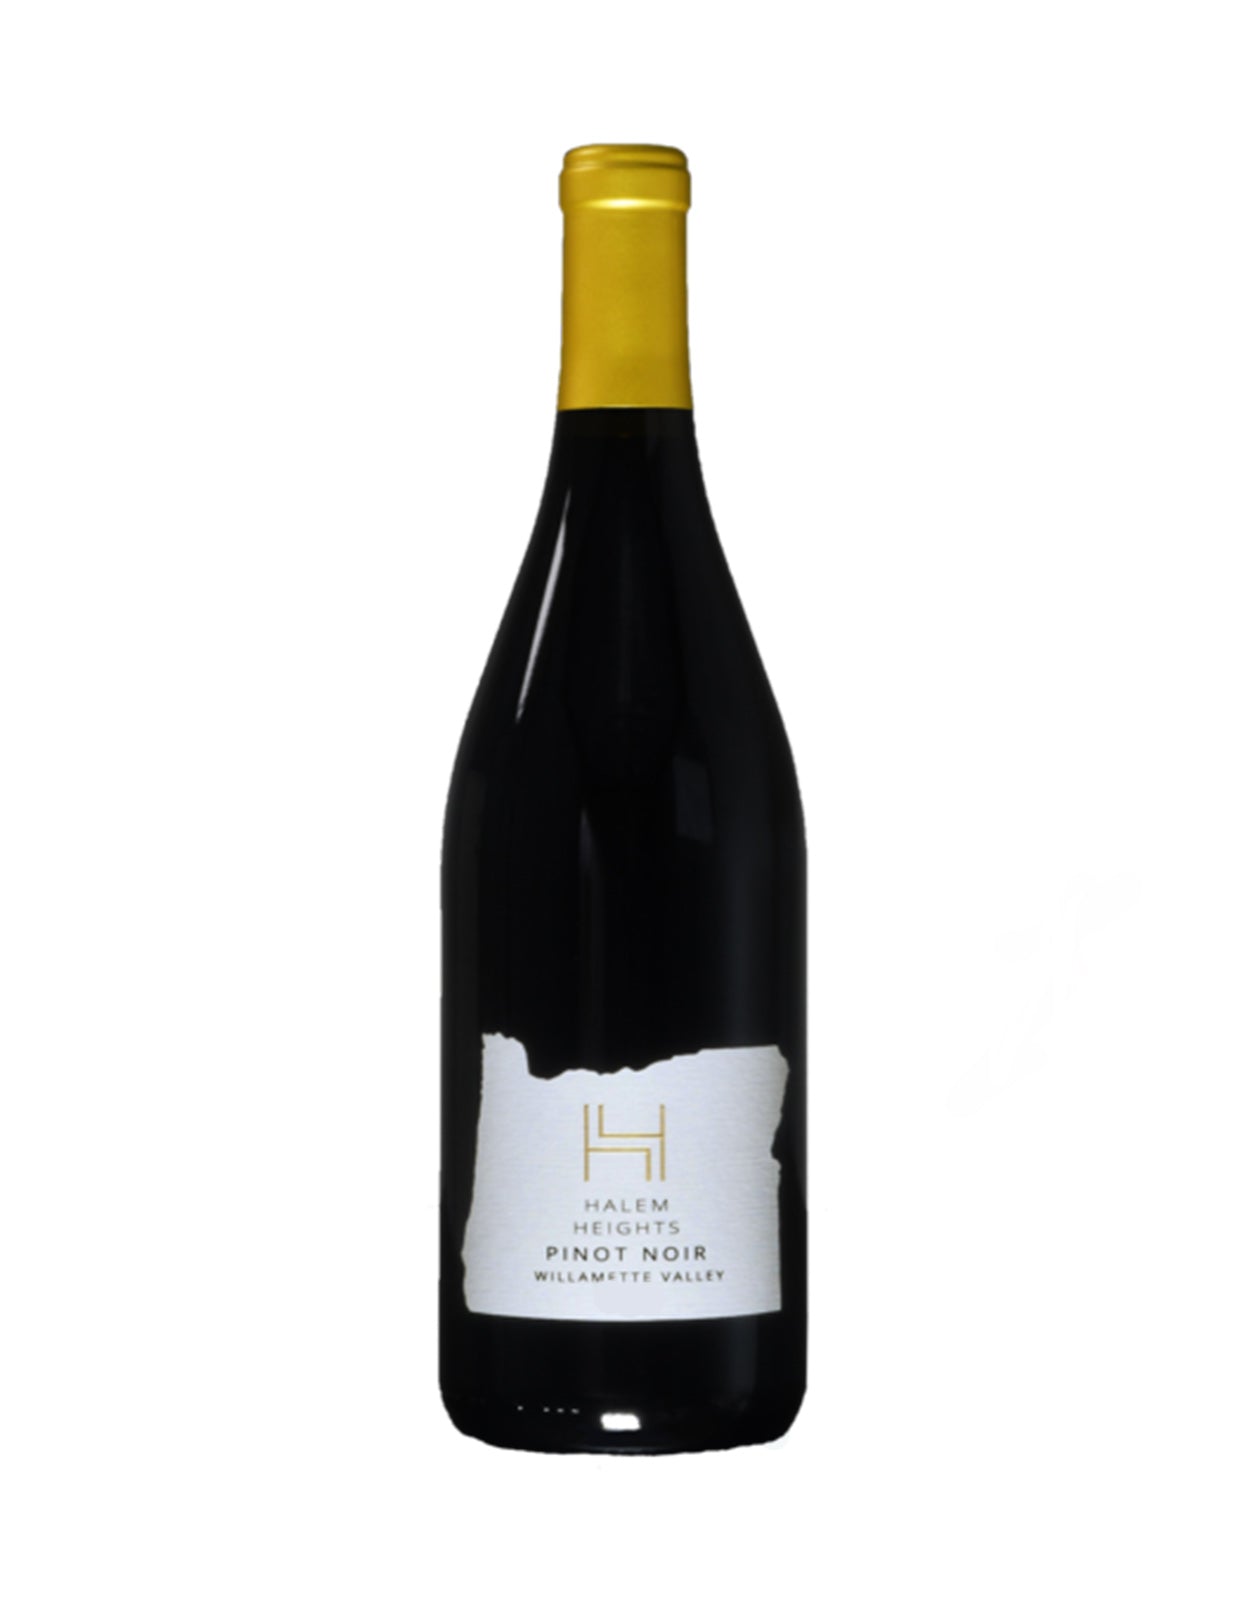 Halem Heights Pinot Noir 2018